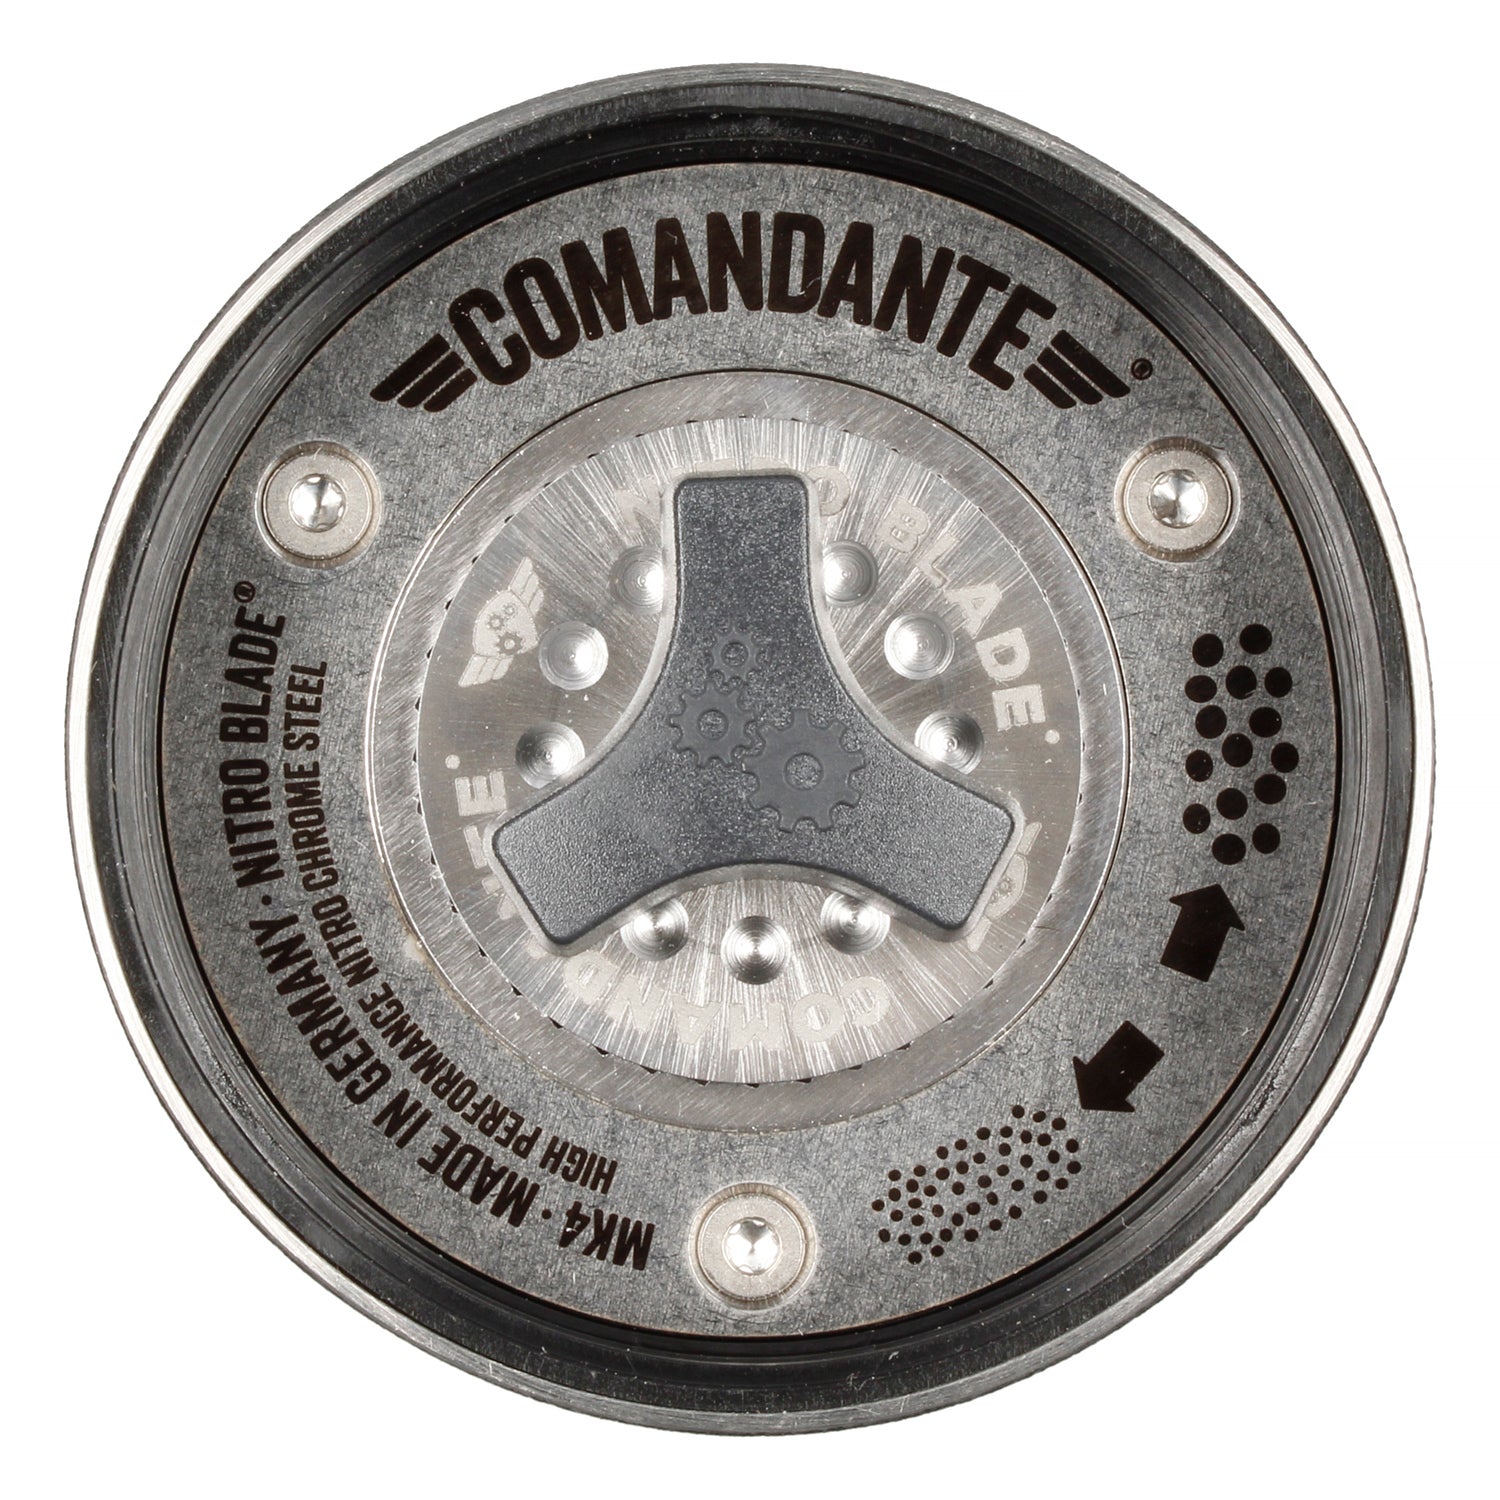 Coffee grinder Comandante C40 MK4 NITRO BLADE